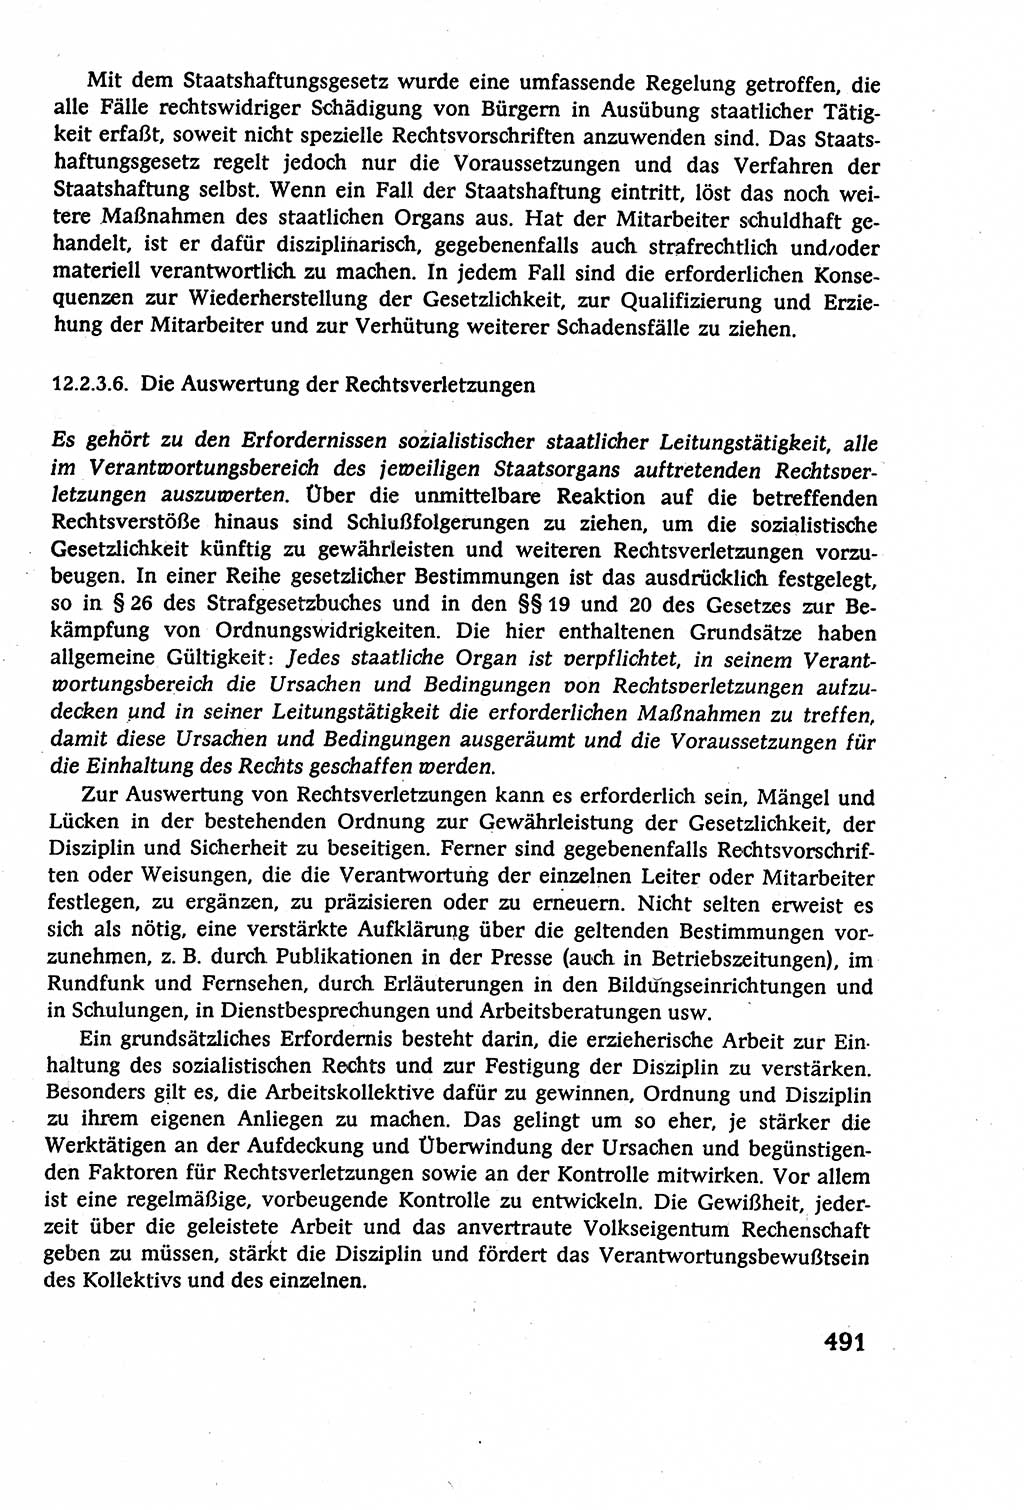 Staatsrecht der DDR (Deutsche Demokratische Republik), Lehrbuch 1977, Seite 491 (St.-R. DDR Lb. 1977, S. 491)